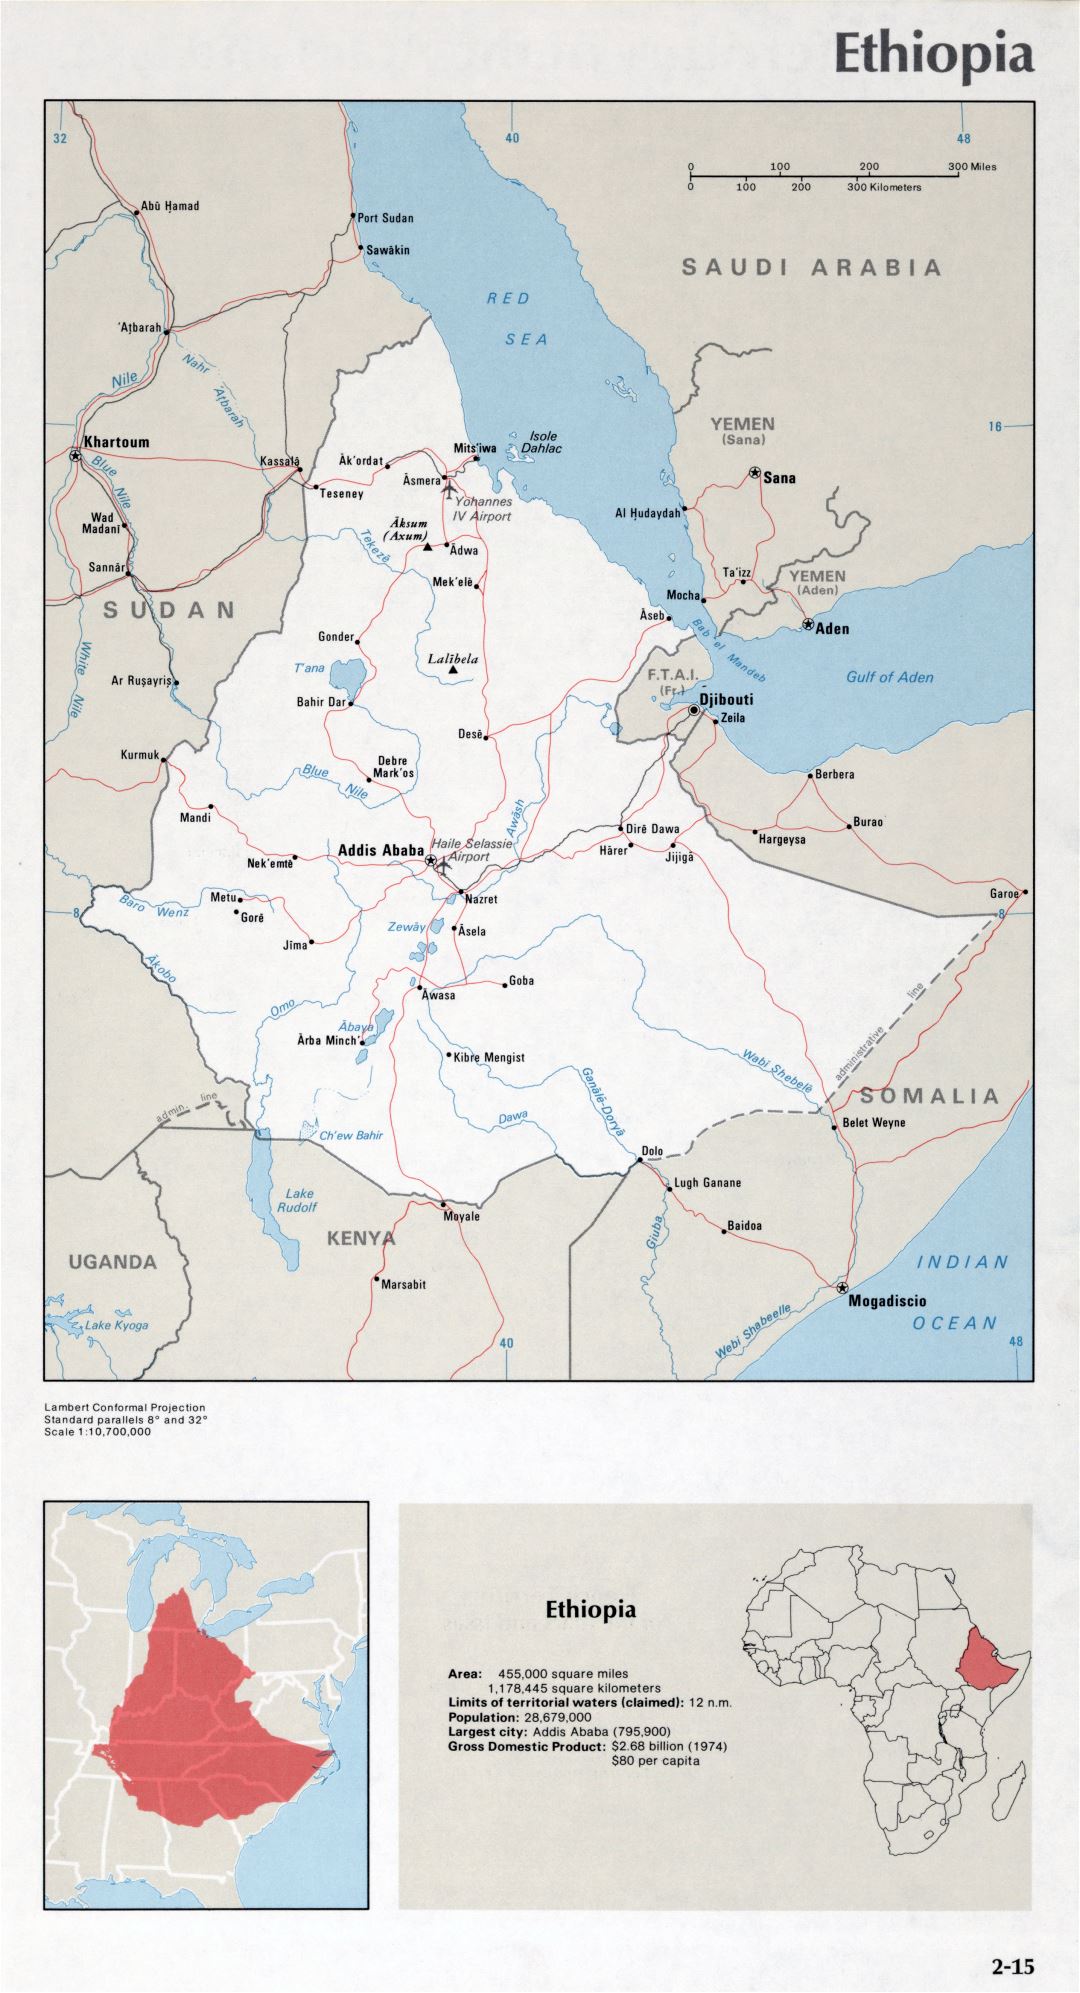 Map of Ethiopia (2-15)